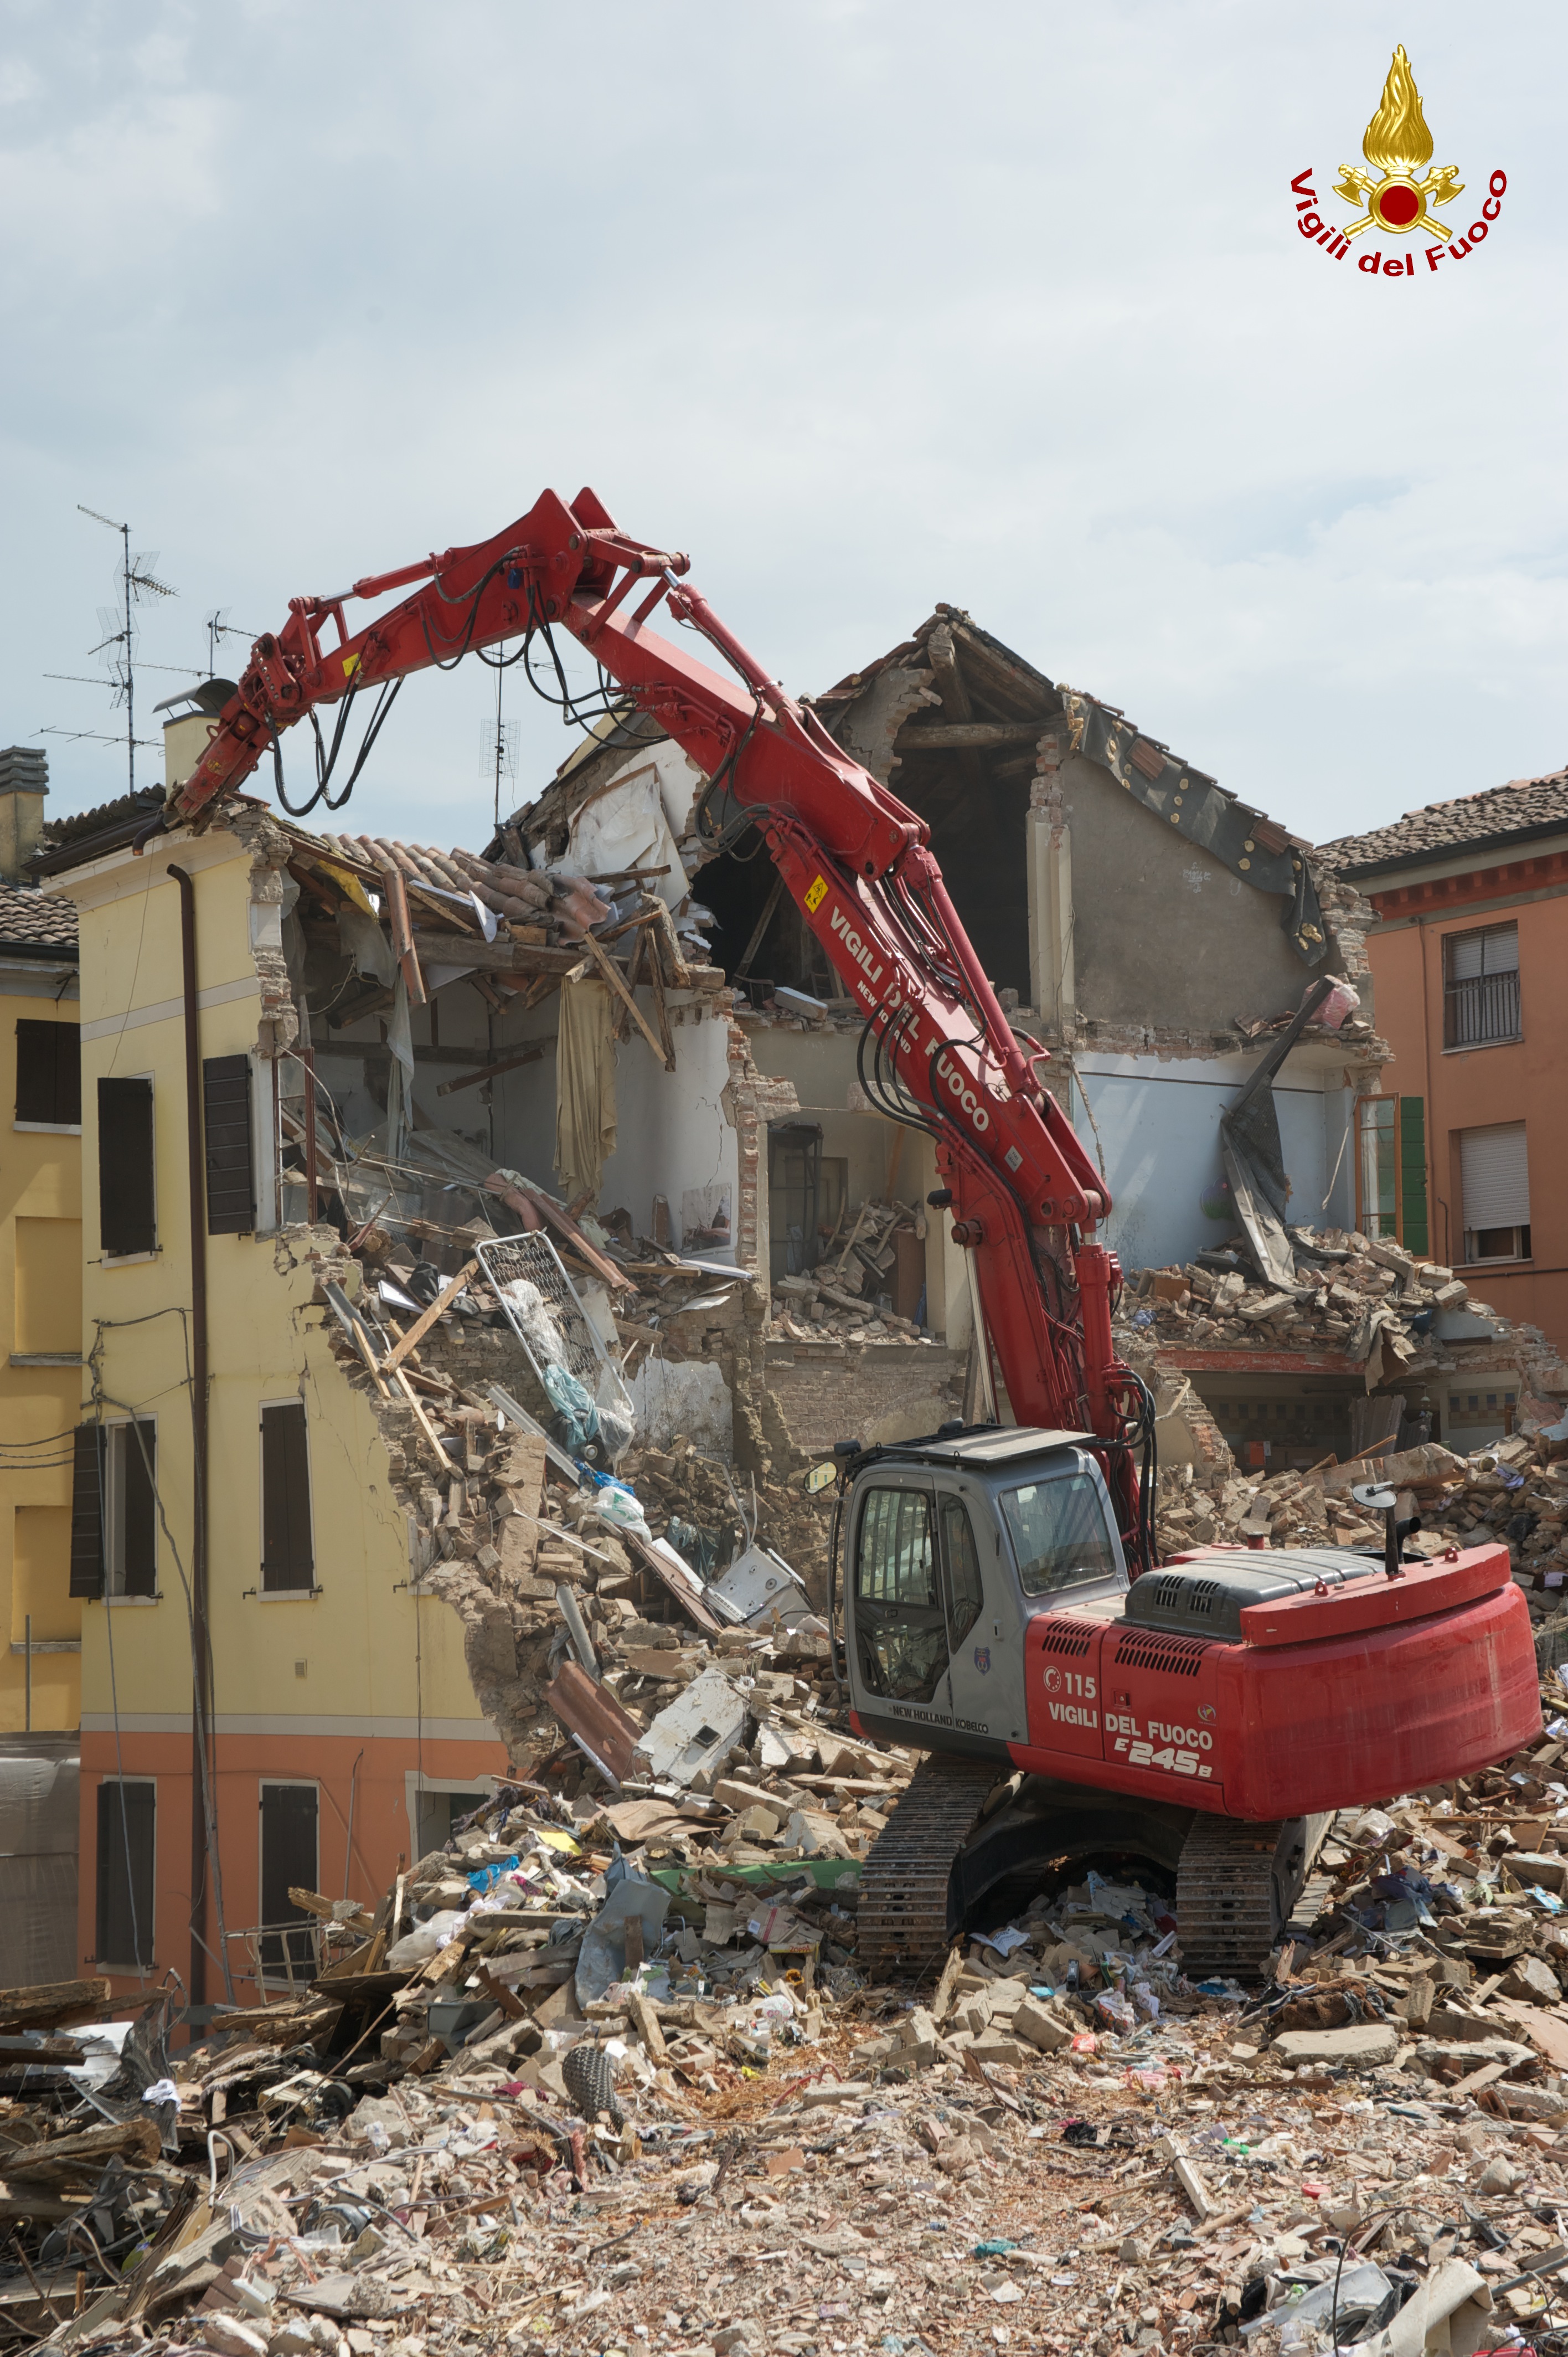 Demolizione abitazione in centro a Cavezzo (MO), tramite mezzo speciale VvF Belluno.